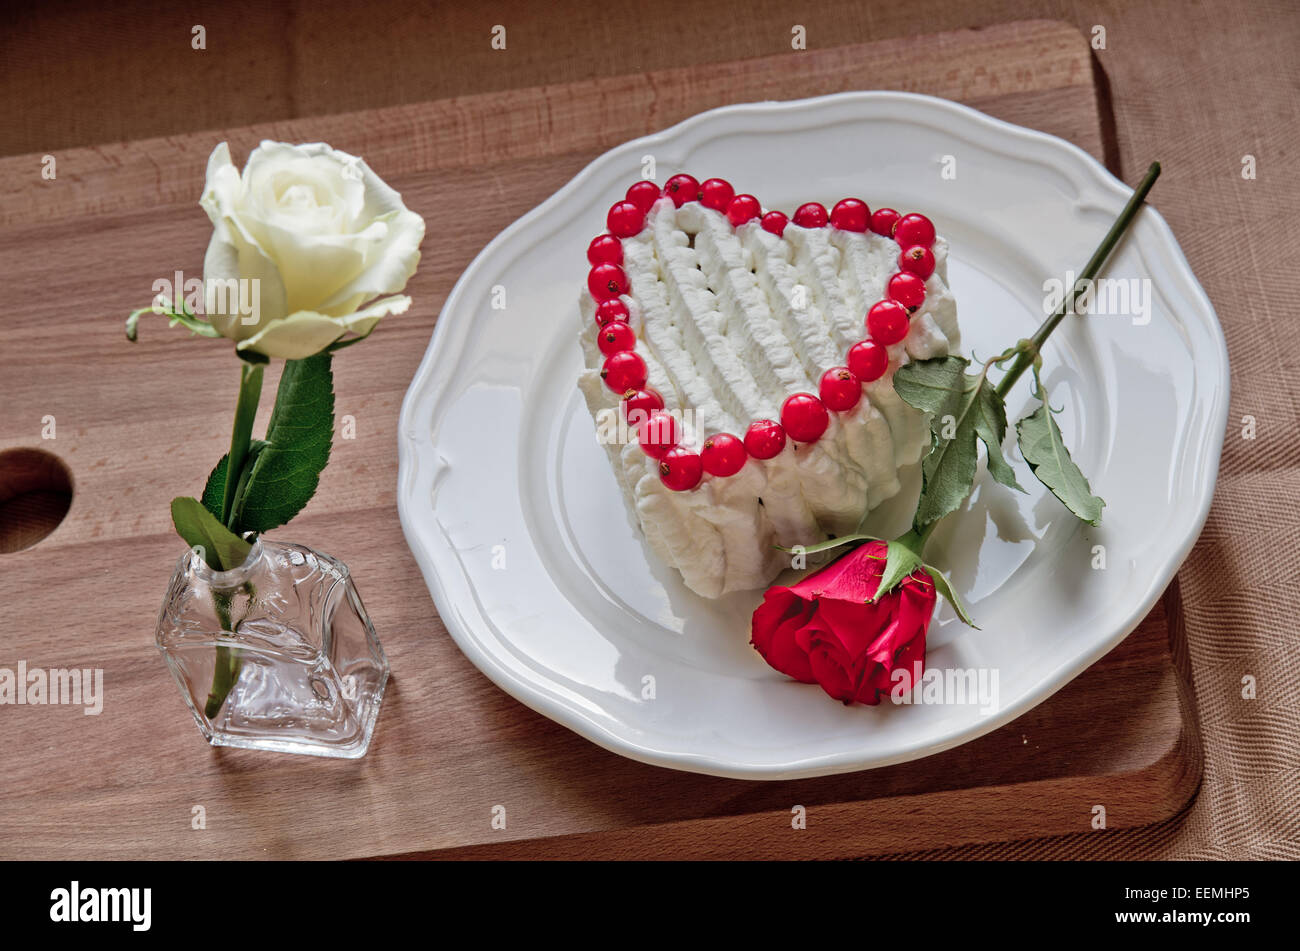 Order Butterfly on Red Heart Fondant Cake Online in Gurugram : From VIBH  Gurugram